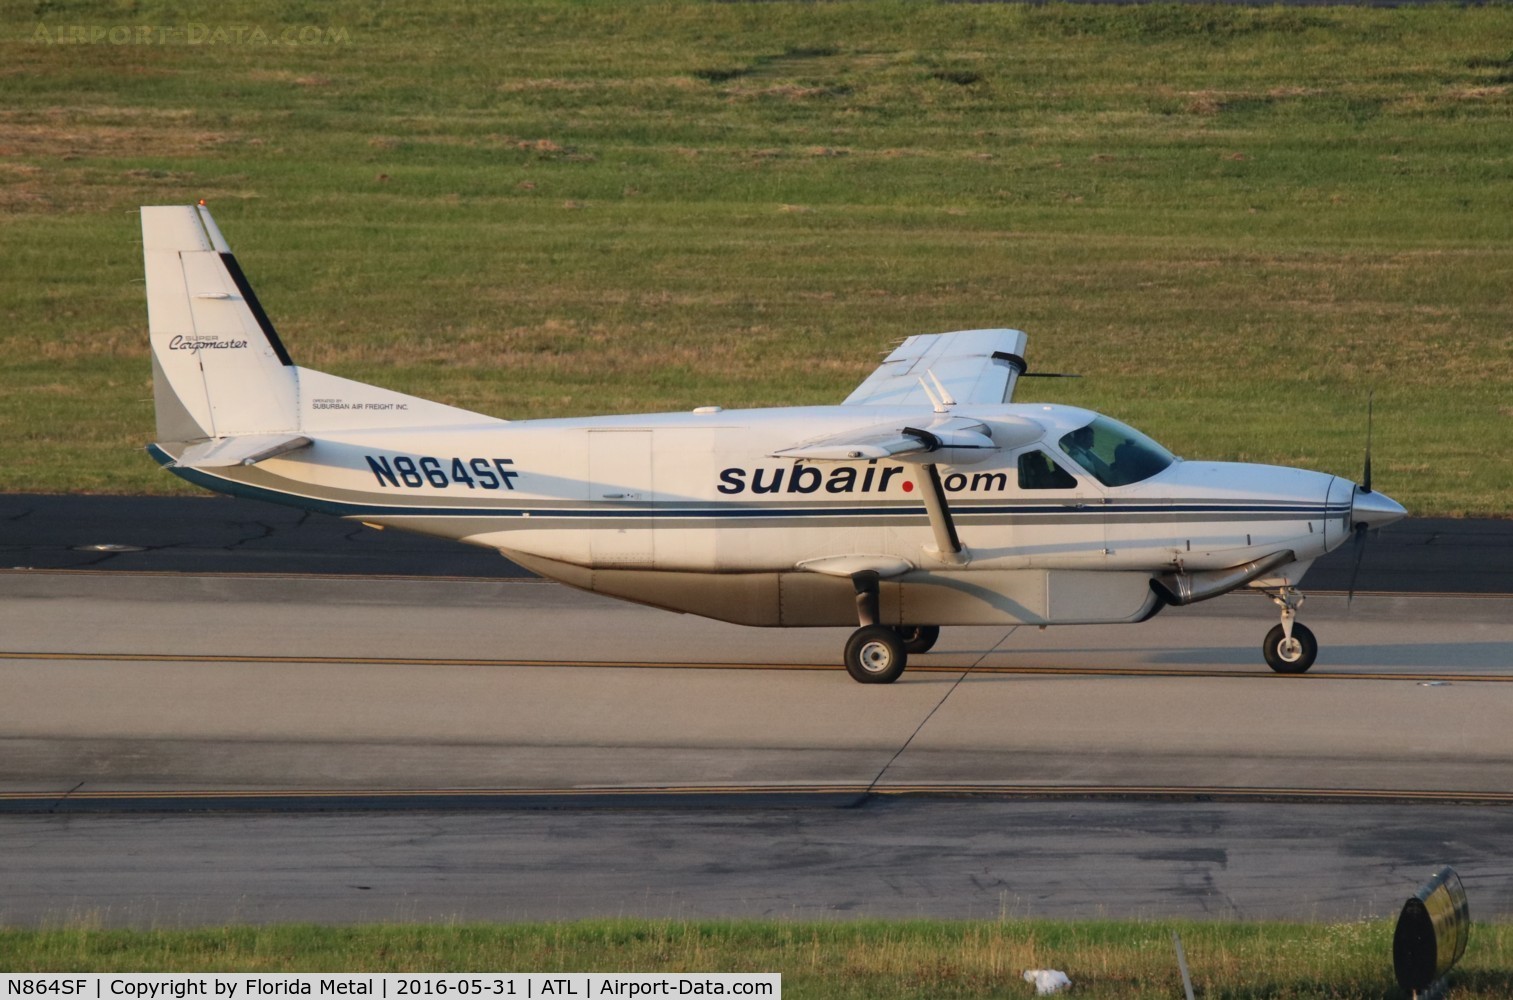 N864SF, 2000 Cessna 208B C/N 208B0864, Sub Air